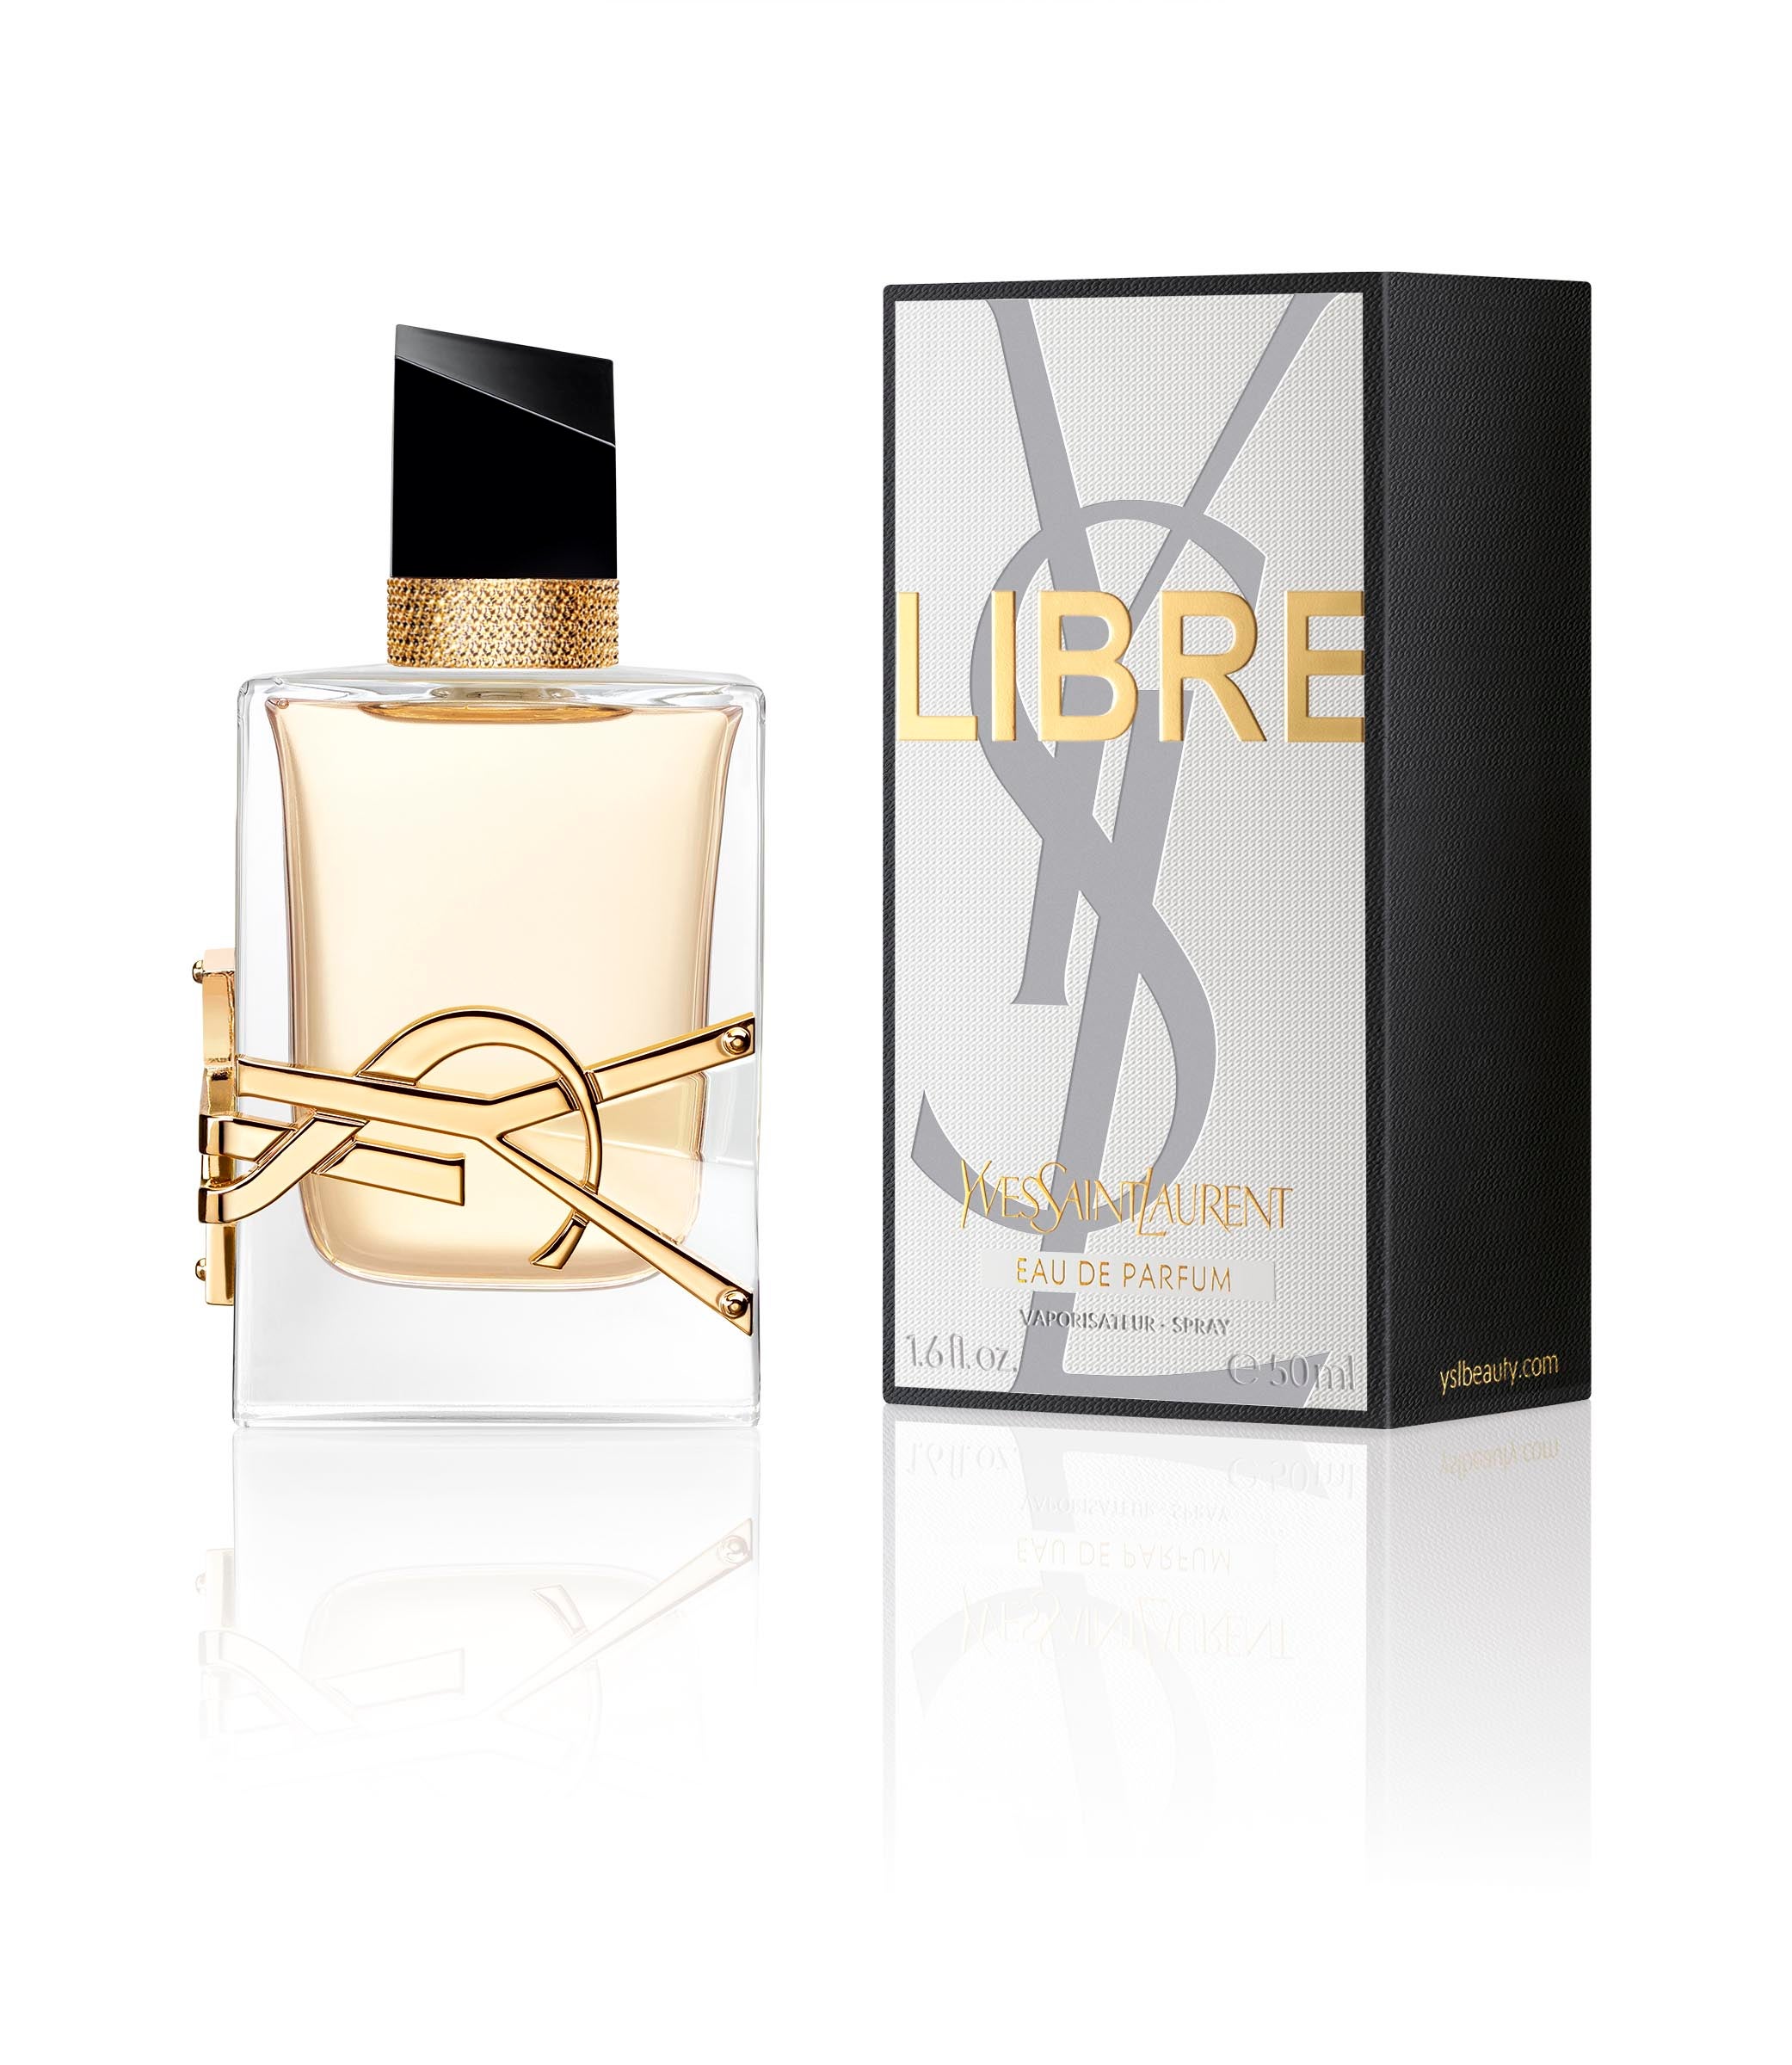 Dua Lipa smolders for the Yves Saint Laurent Libre Le Parfum Campaign